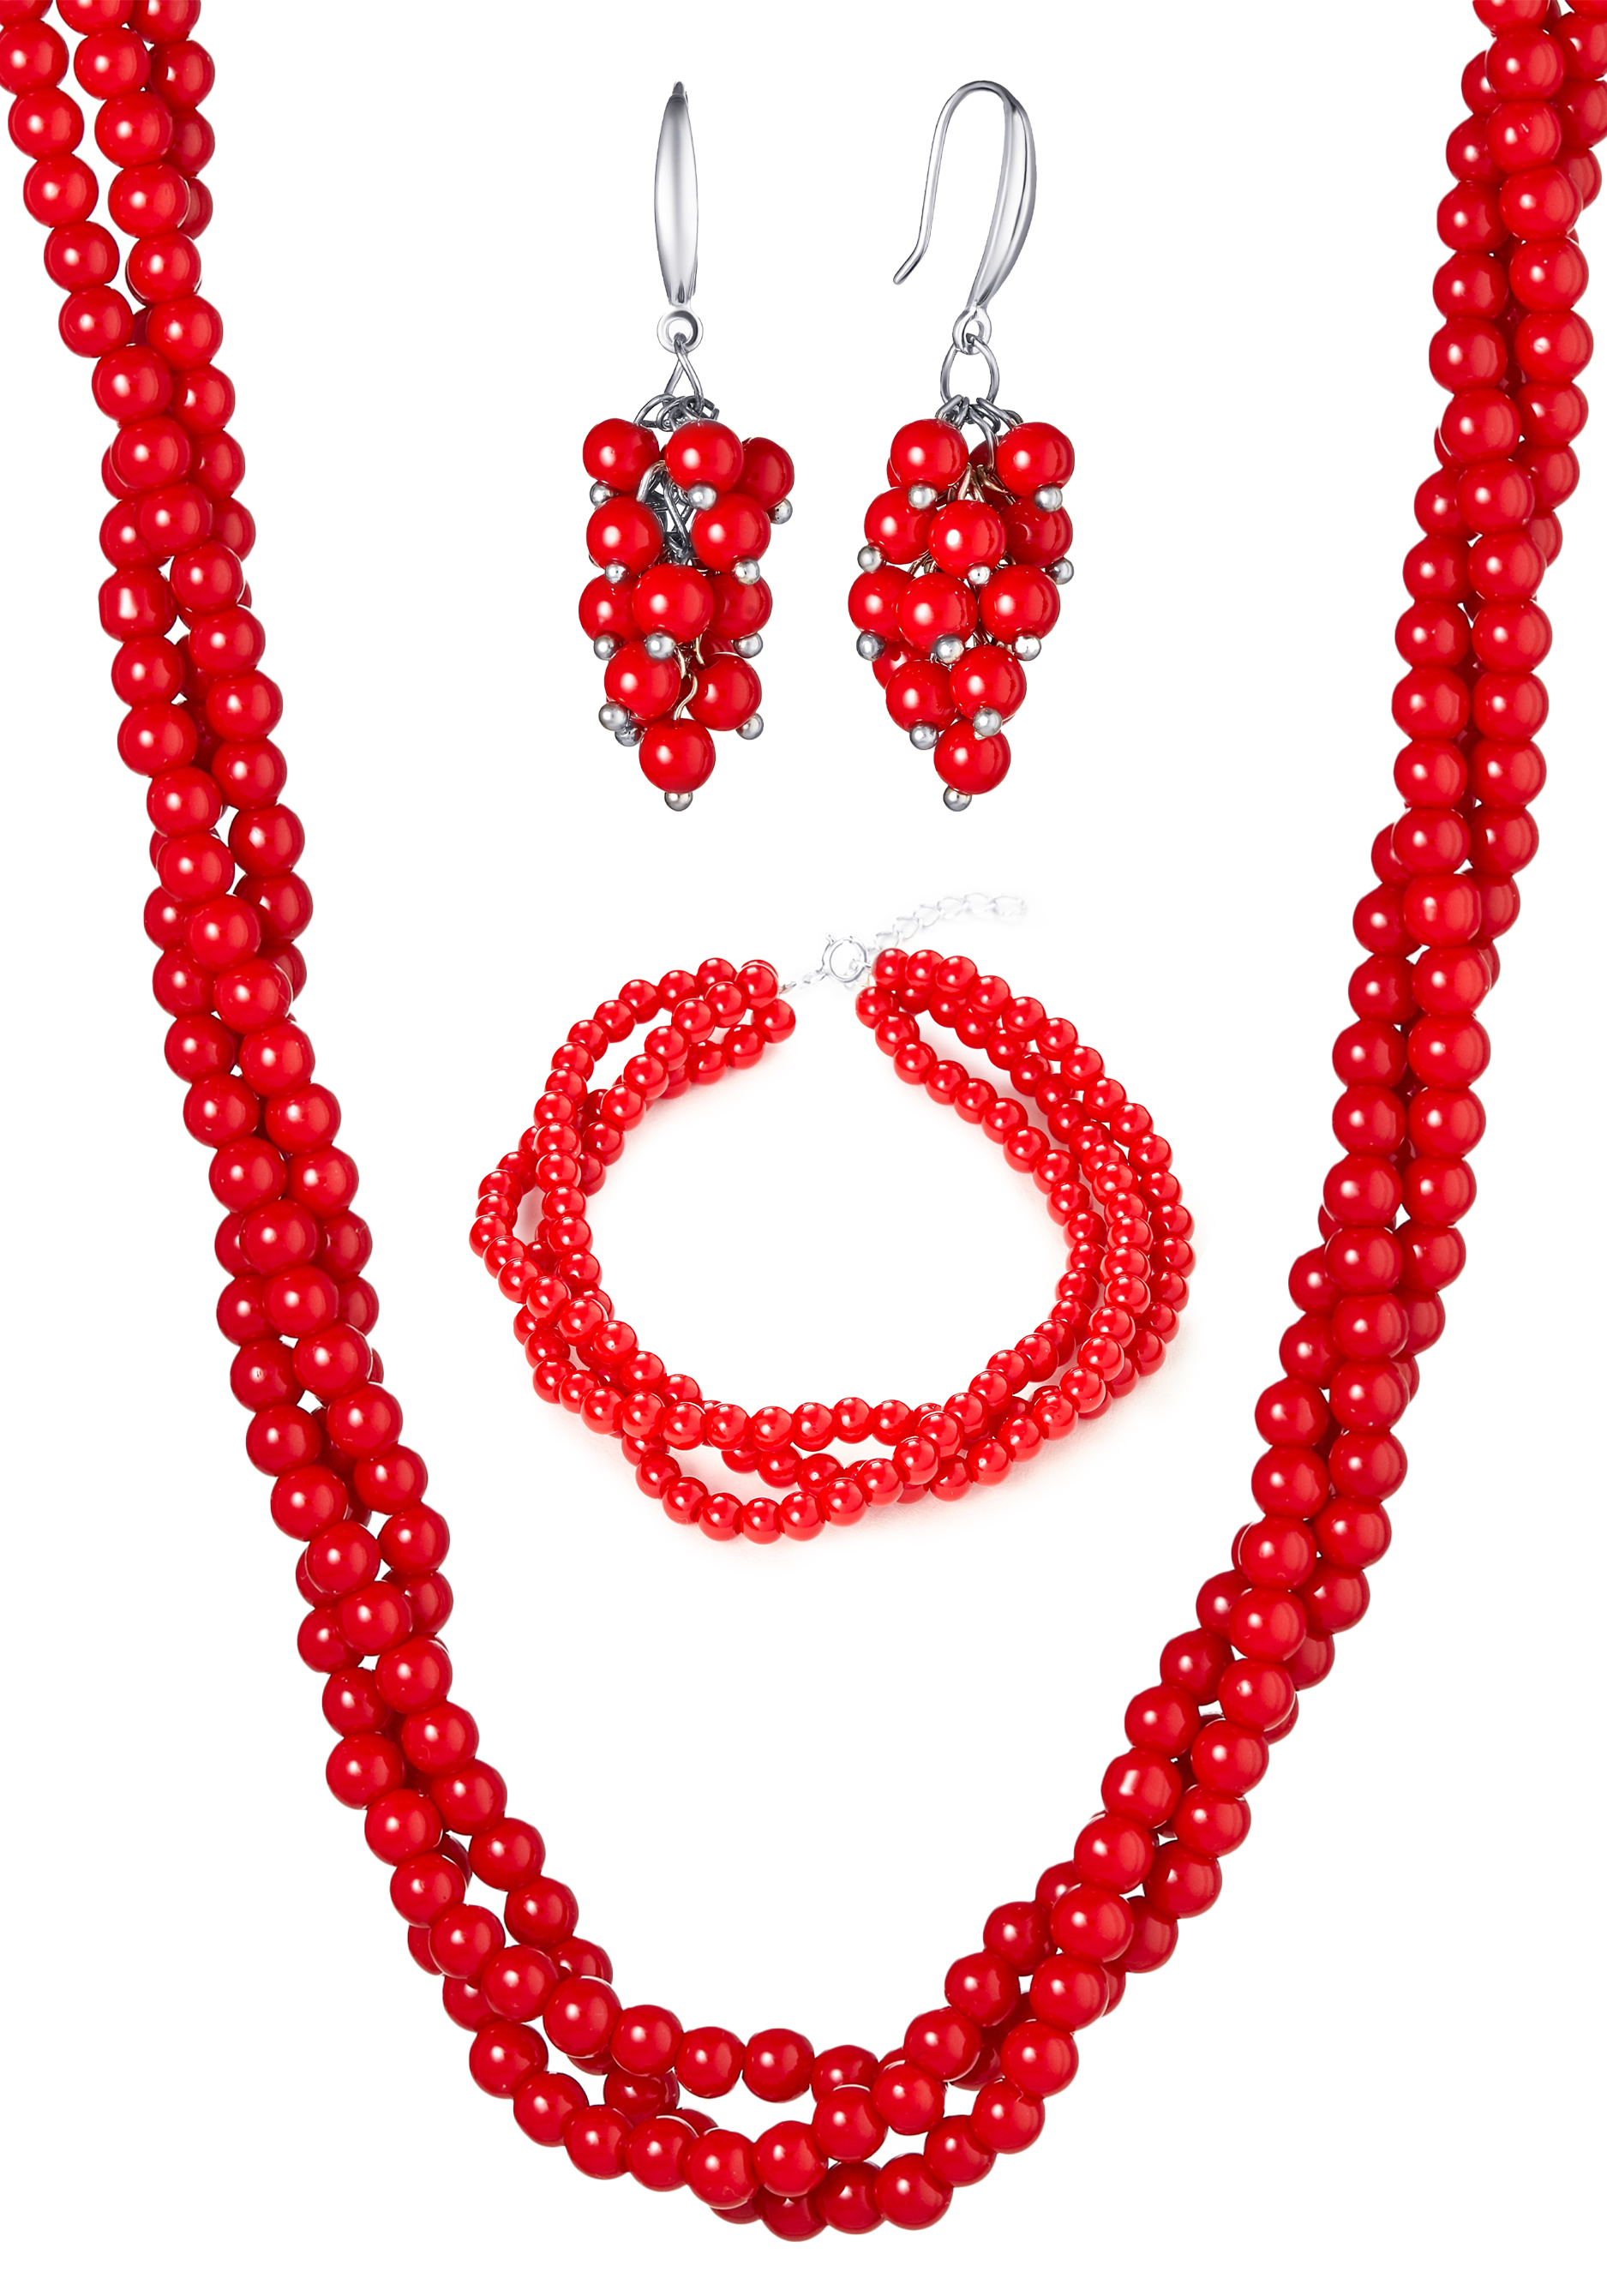 Комплект "Корраловый рай" Apsara, цвет красный, размер 50 матине, принцесса - фото 1